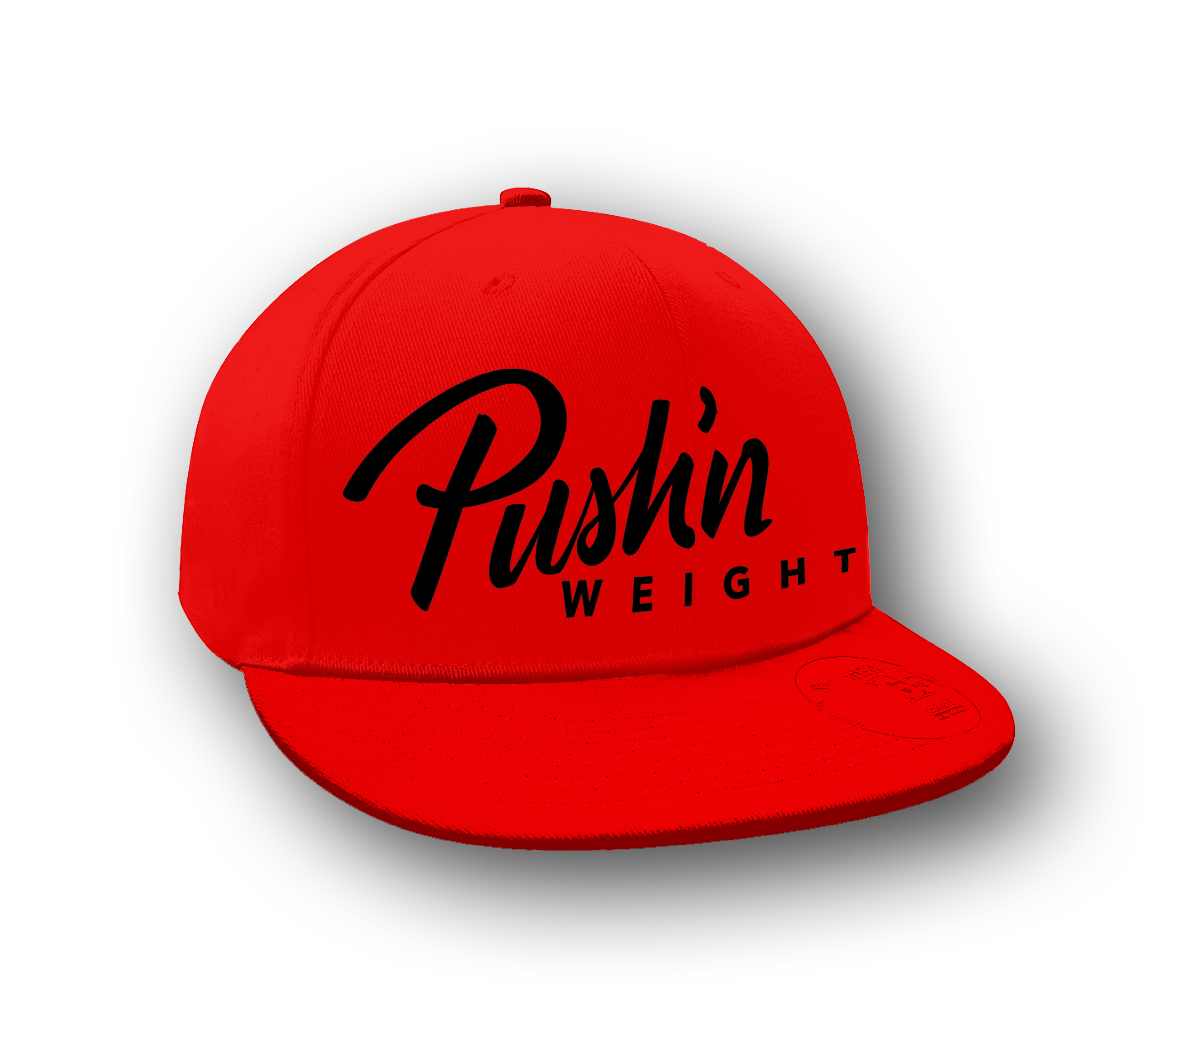 Pushn Weight Red & Black Cap